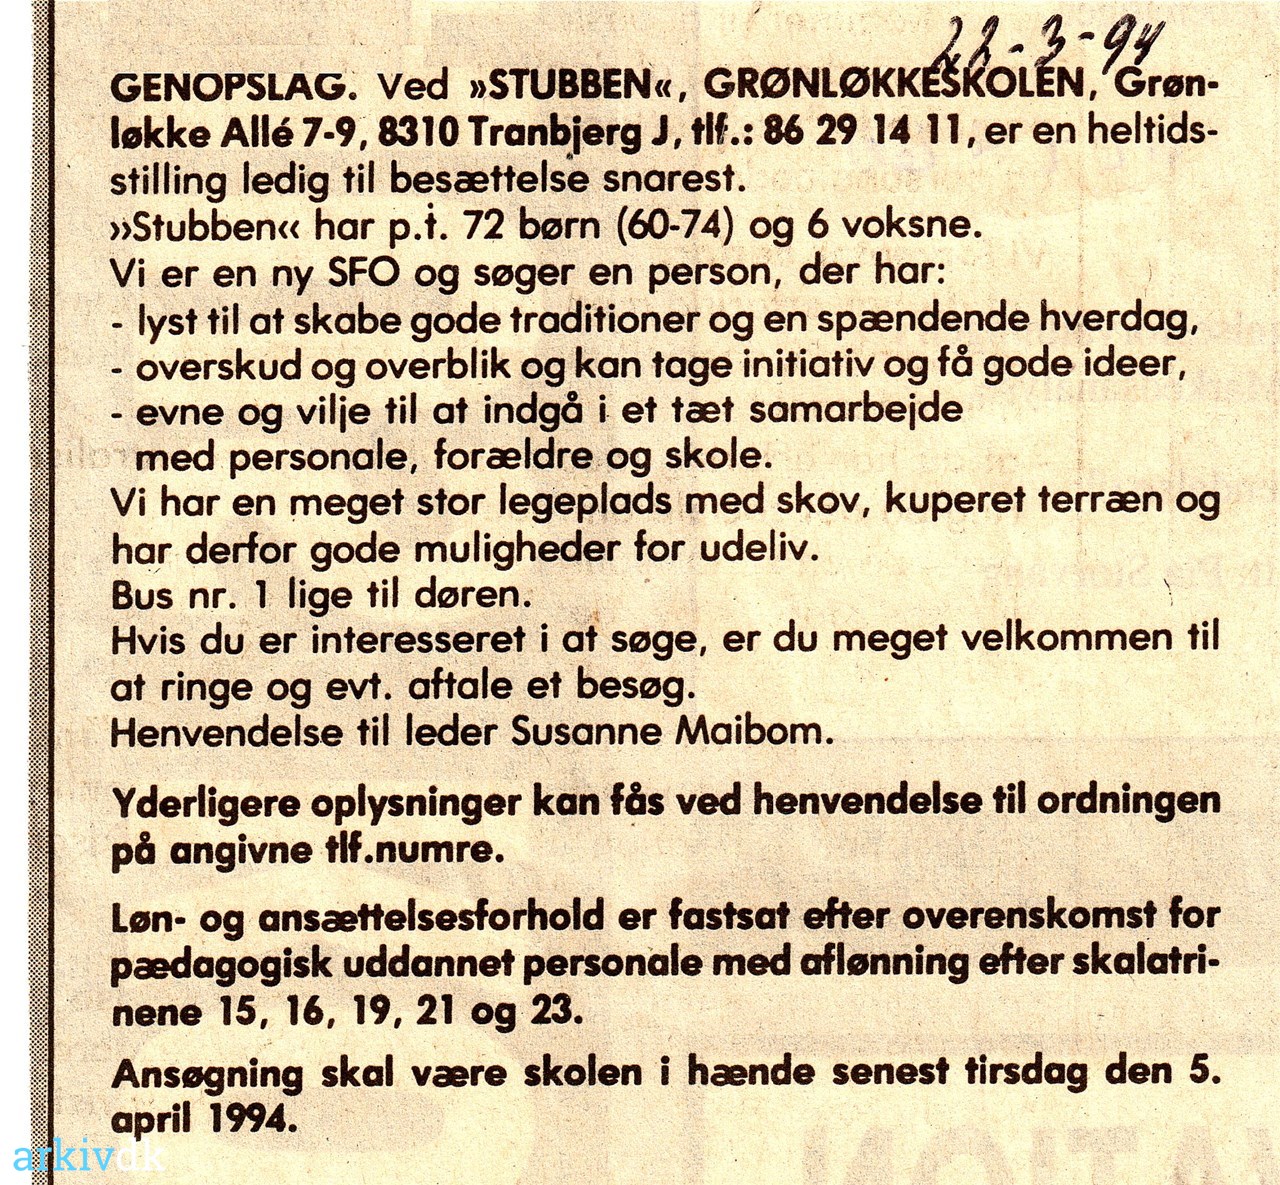 arkiv.dk | Genopslag: Ved »STUBBEN«, 1994.